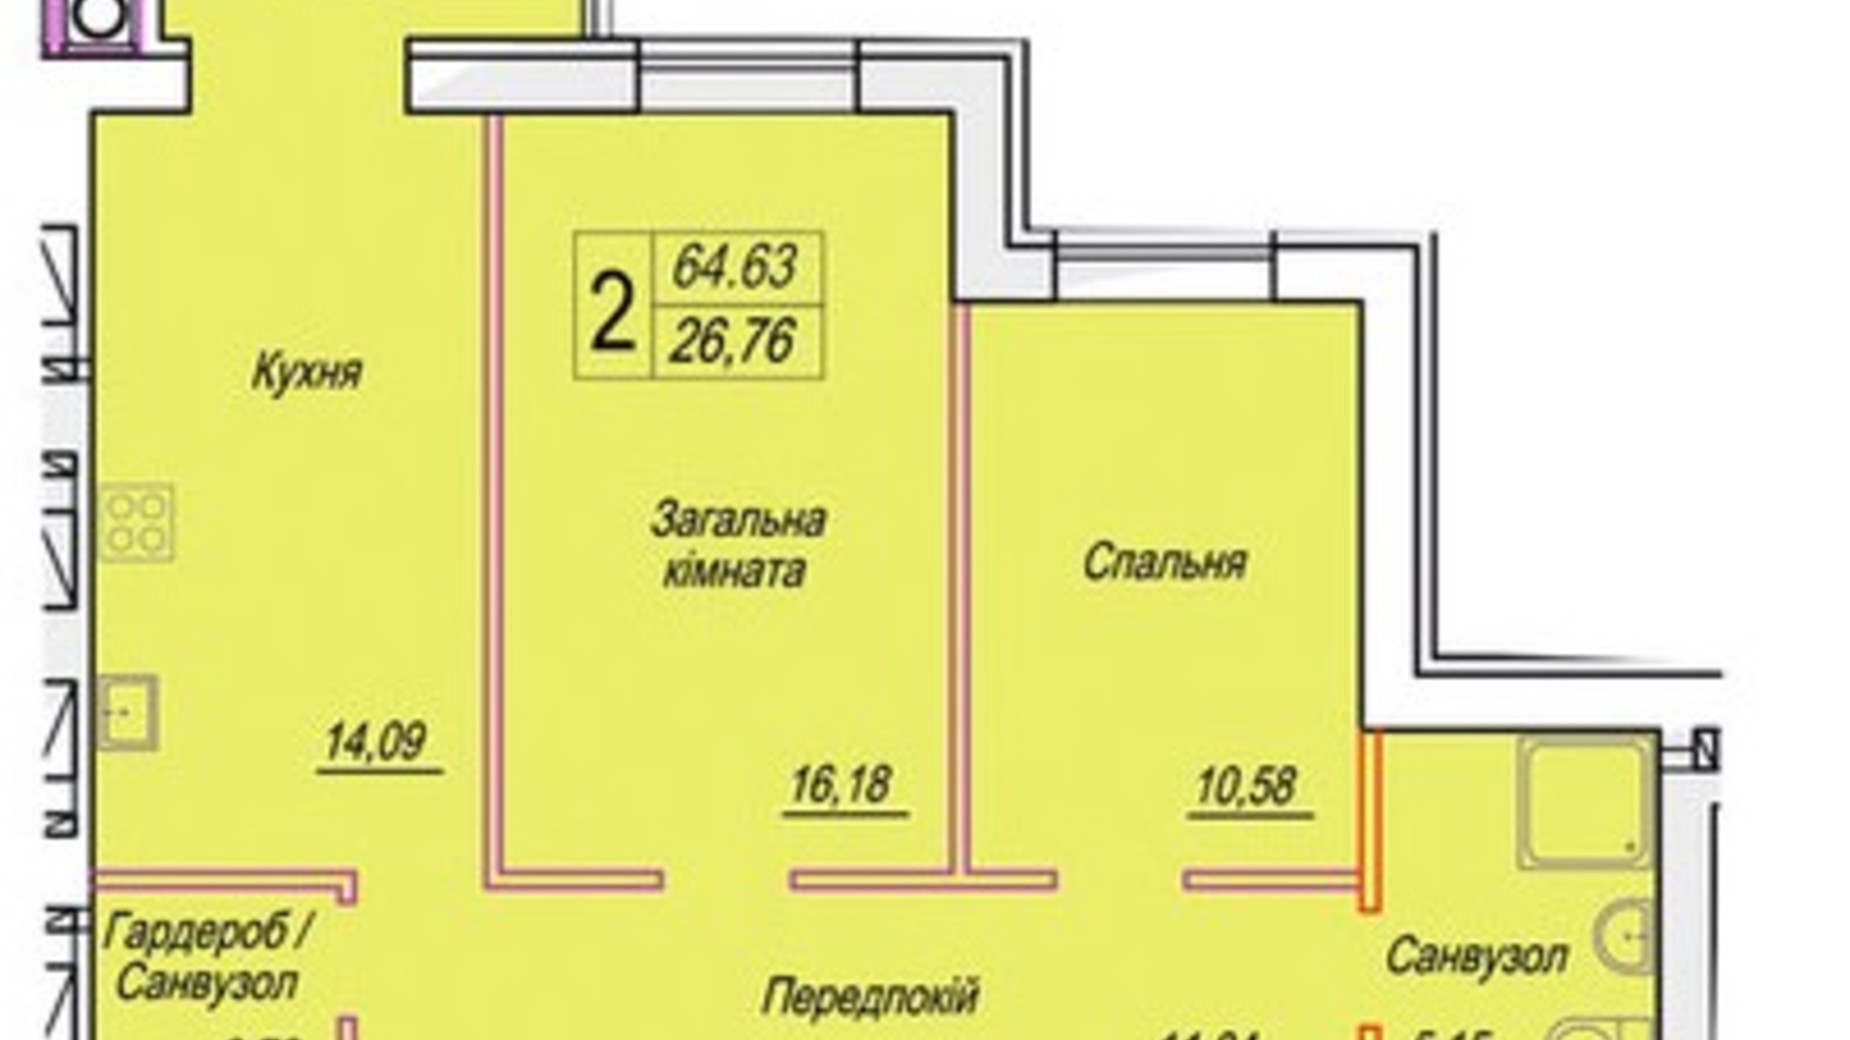 Планировка 2-комнатной квартиры в ЖК Смарт Сити 3 64.63 м², фото 690950